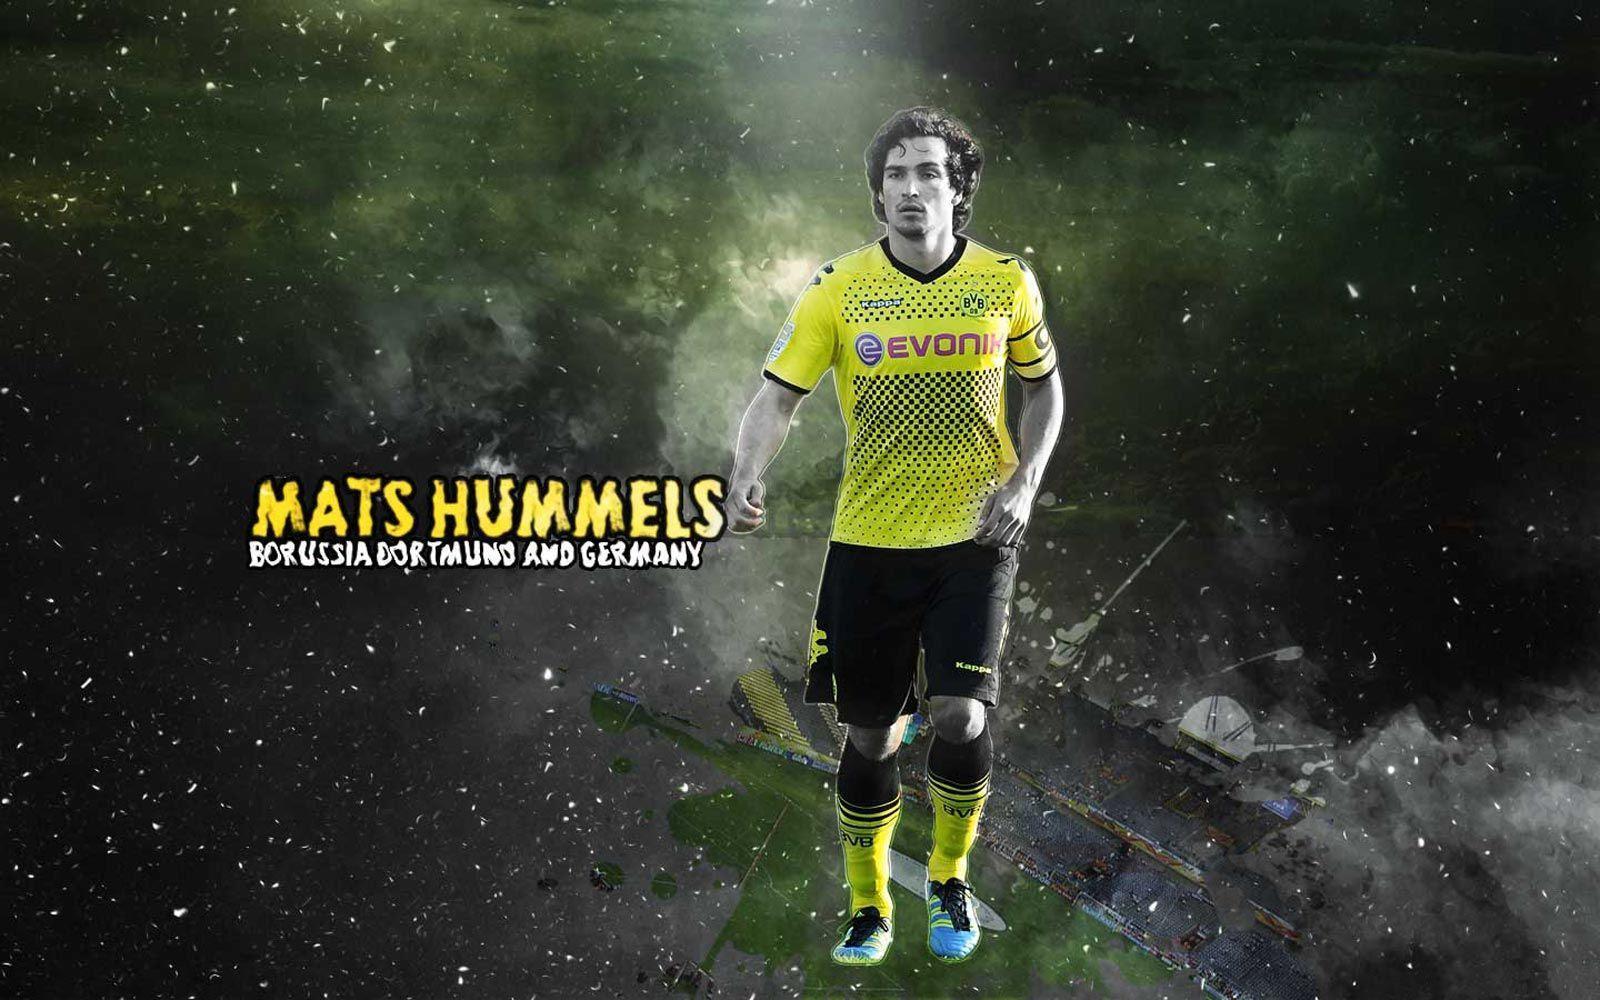 Mats Hummels HD Image. Mats hummels and HD image